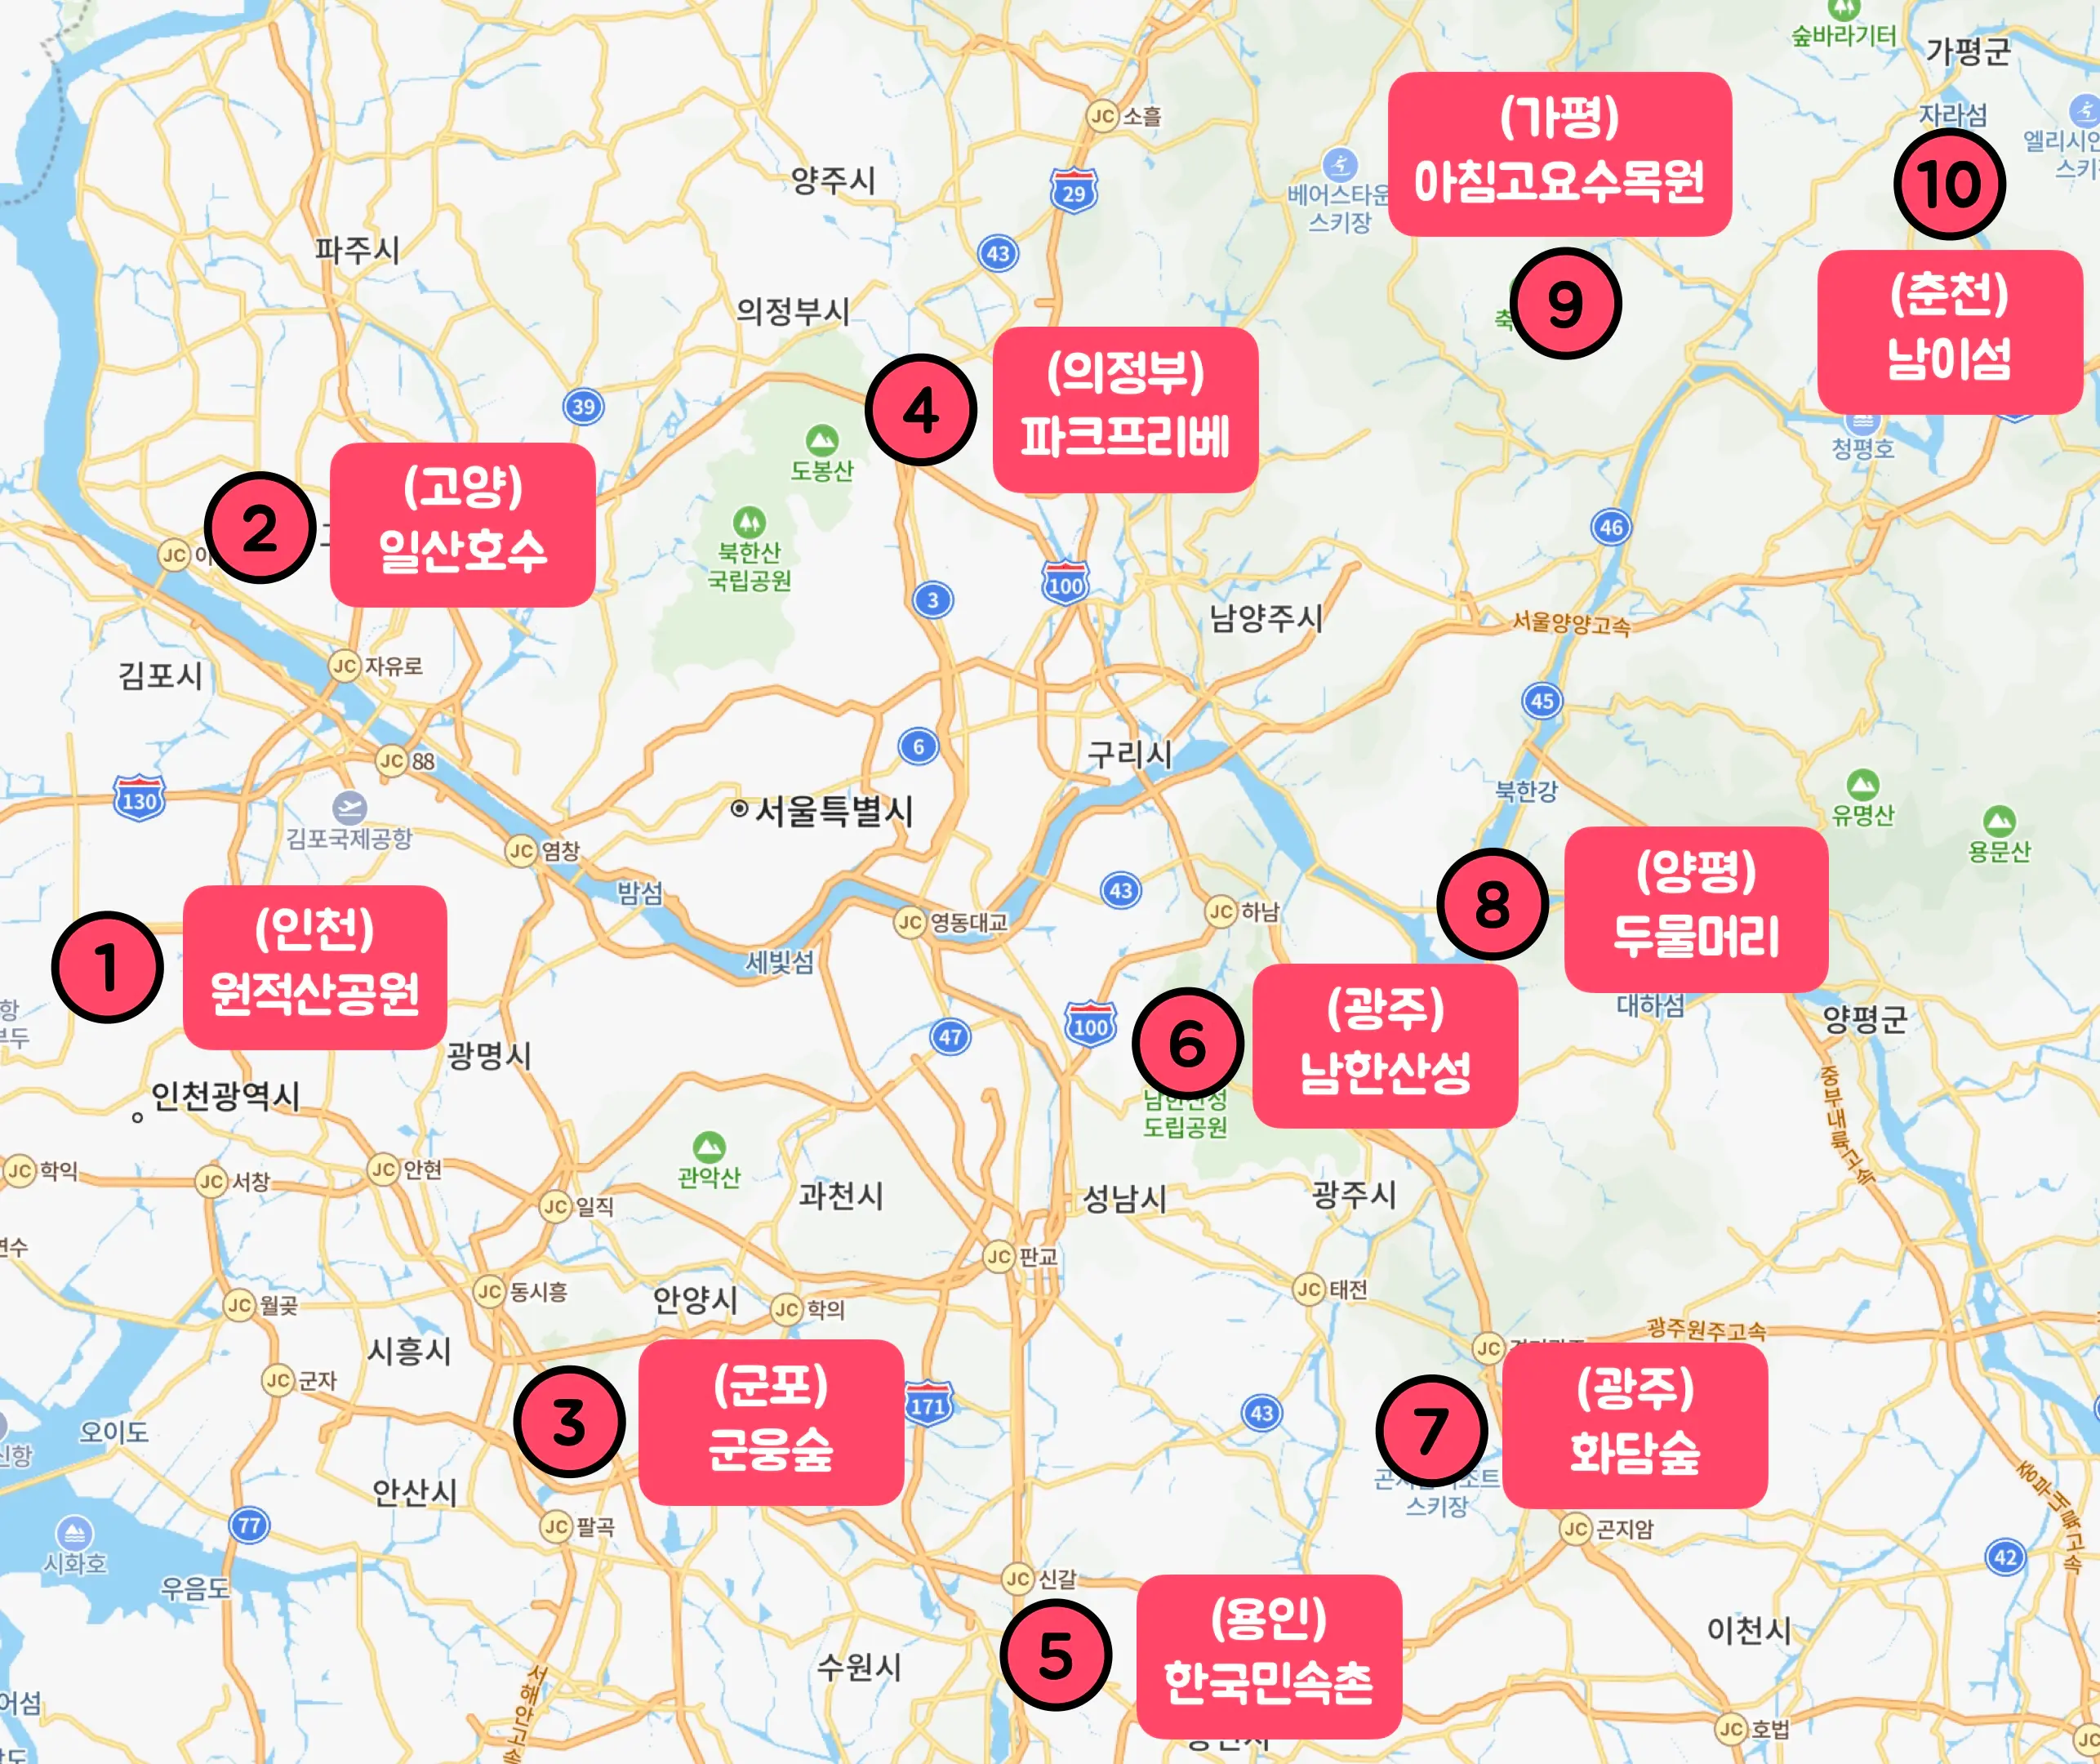 서울 인근 단풍명소 10곳을 지도에 표시한 사진